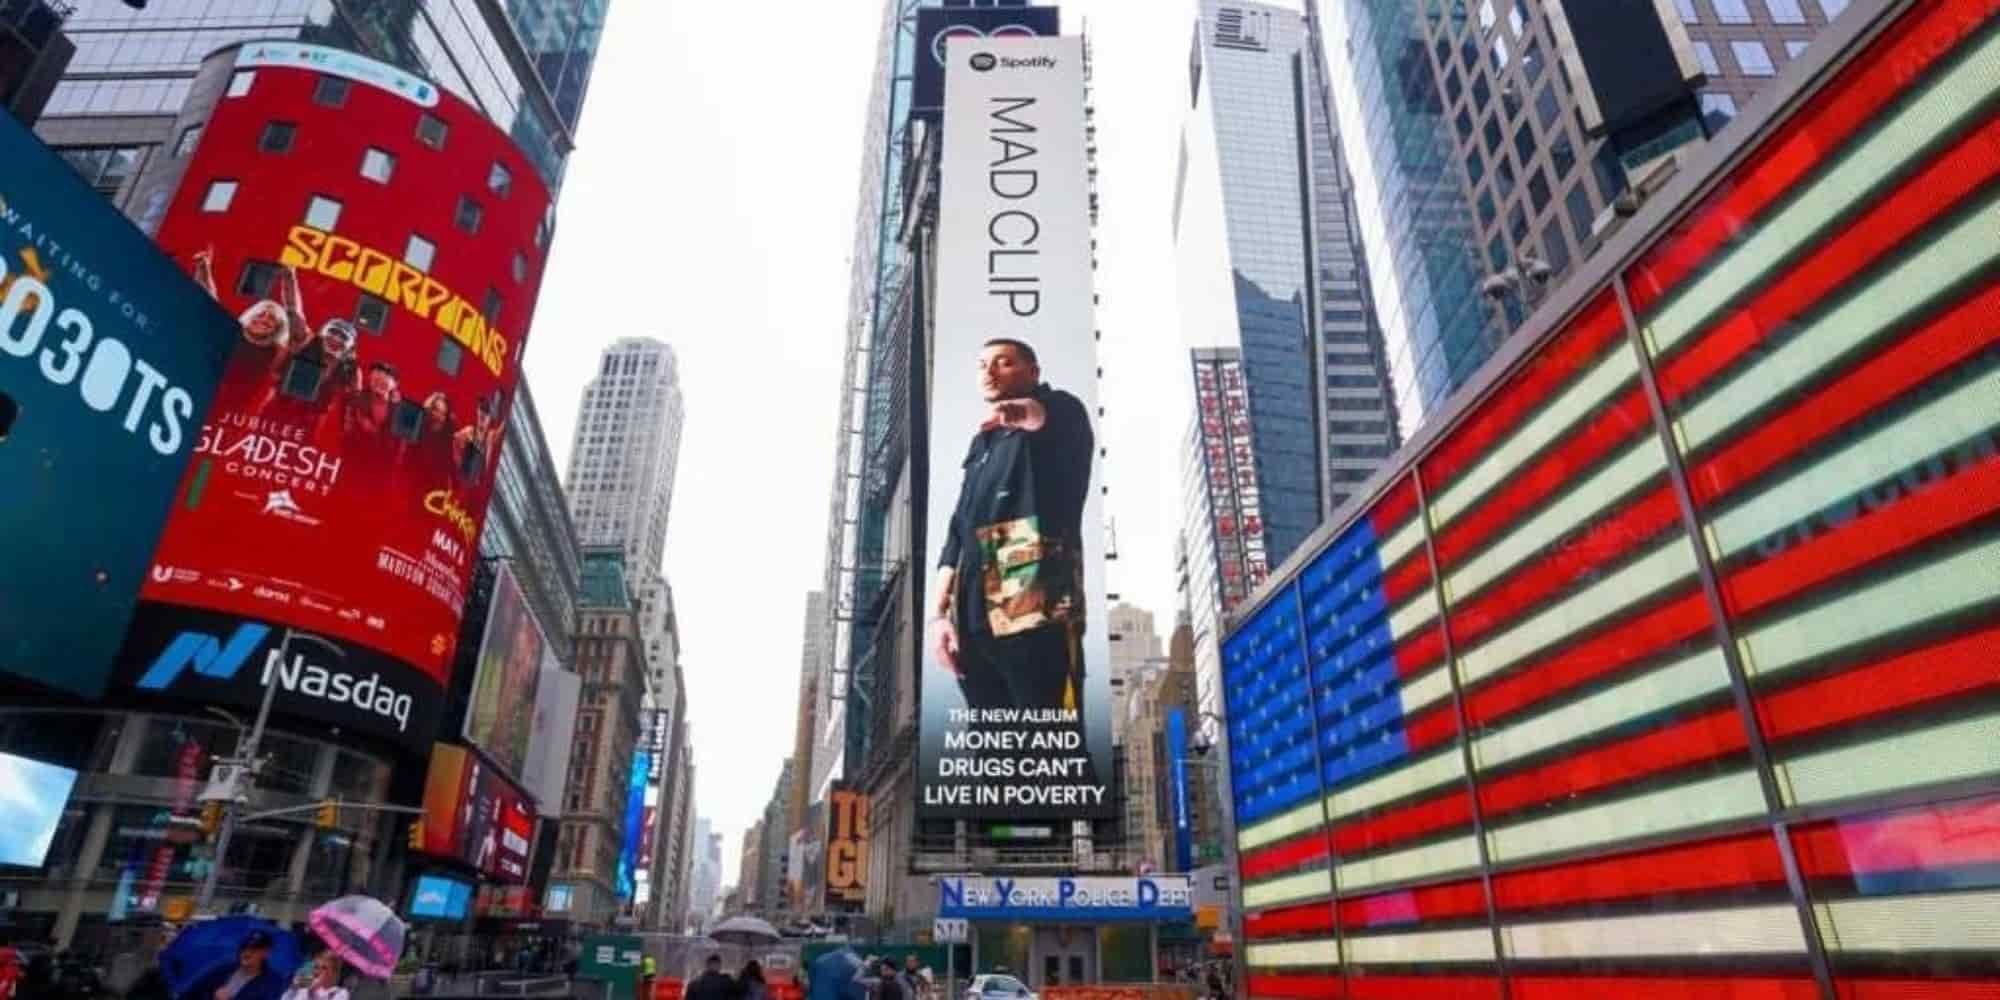 Σε billboard στην Times Square για το «Money And Drugs Can’t Live In Poverty» ο Mad Clip